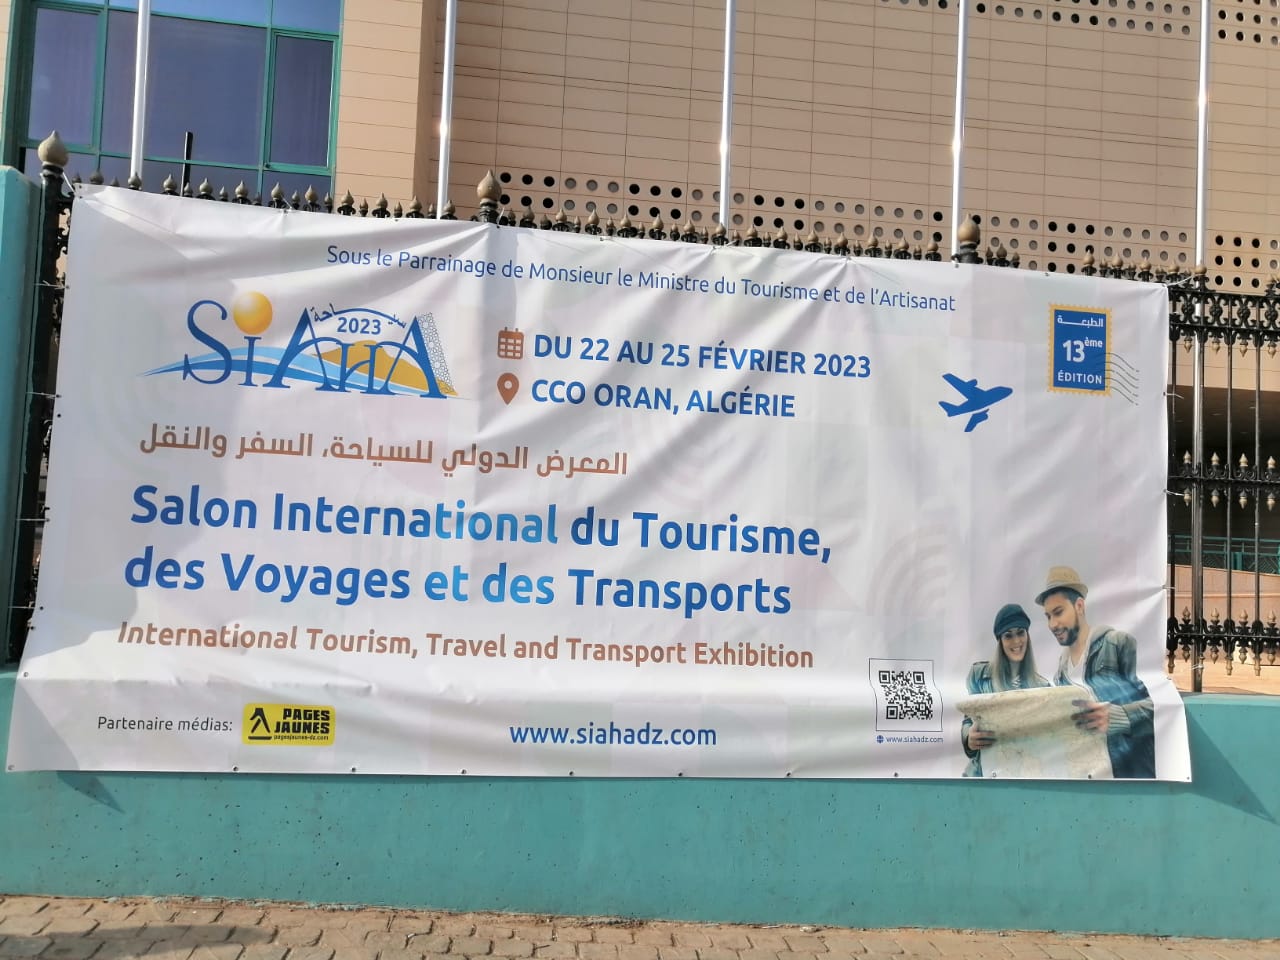 Salon International du Tourisme, des Voyages et des Transports (SIAHA)  du 22 au 25 fÃ©vrier 2023 Ã  Oran en AlgÃ©rie